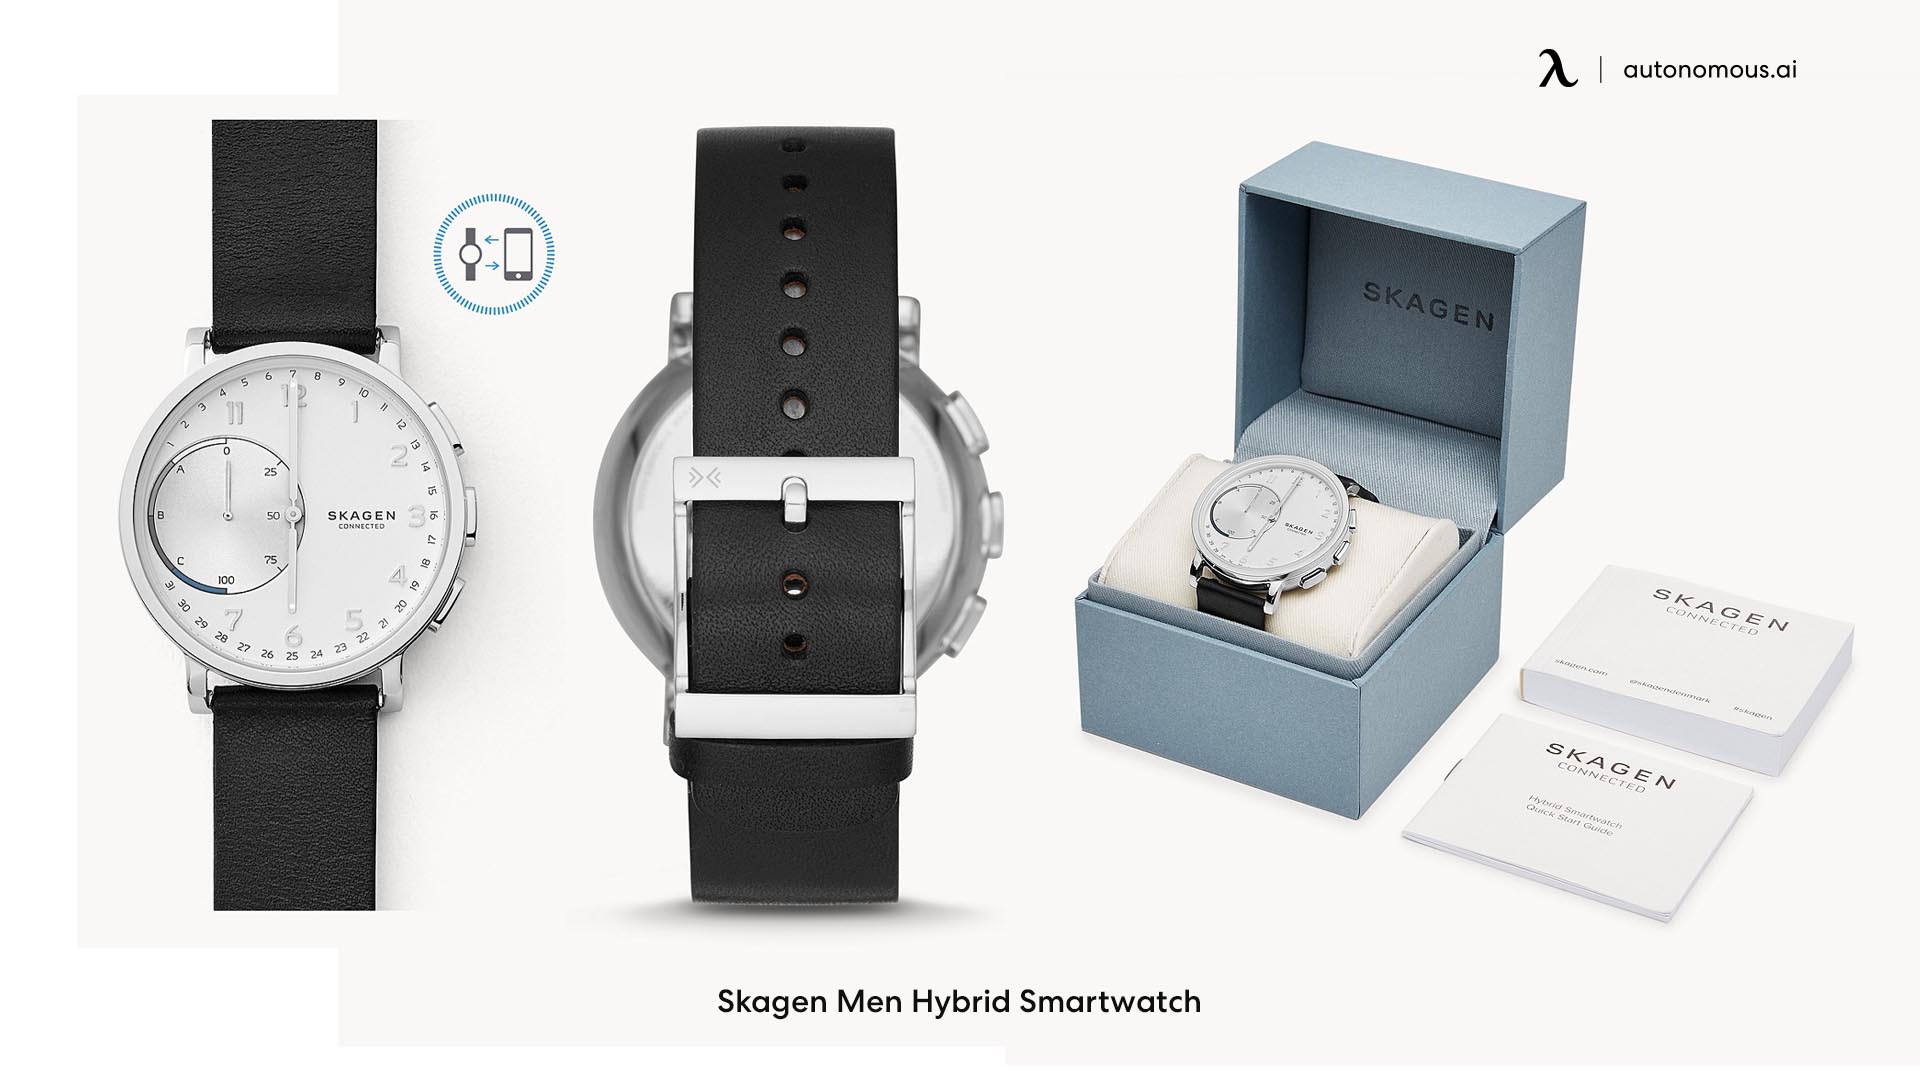 Skagen Men Hybrid Smartwatch